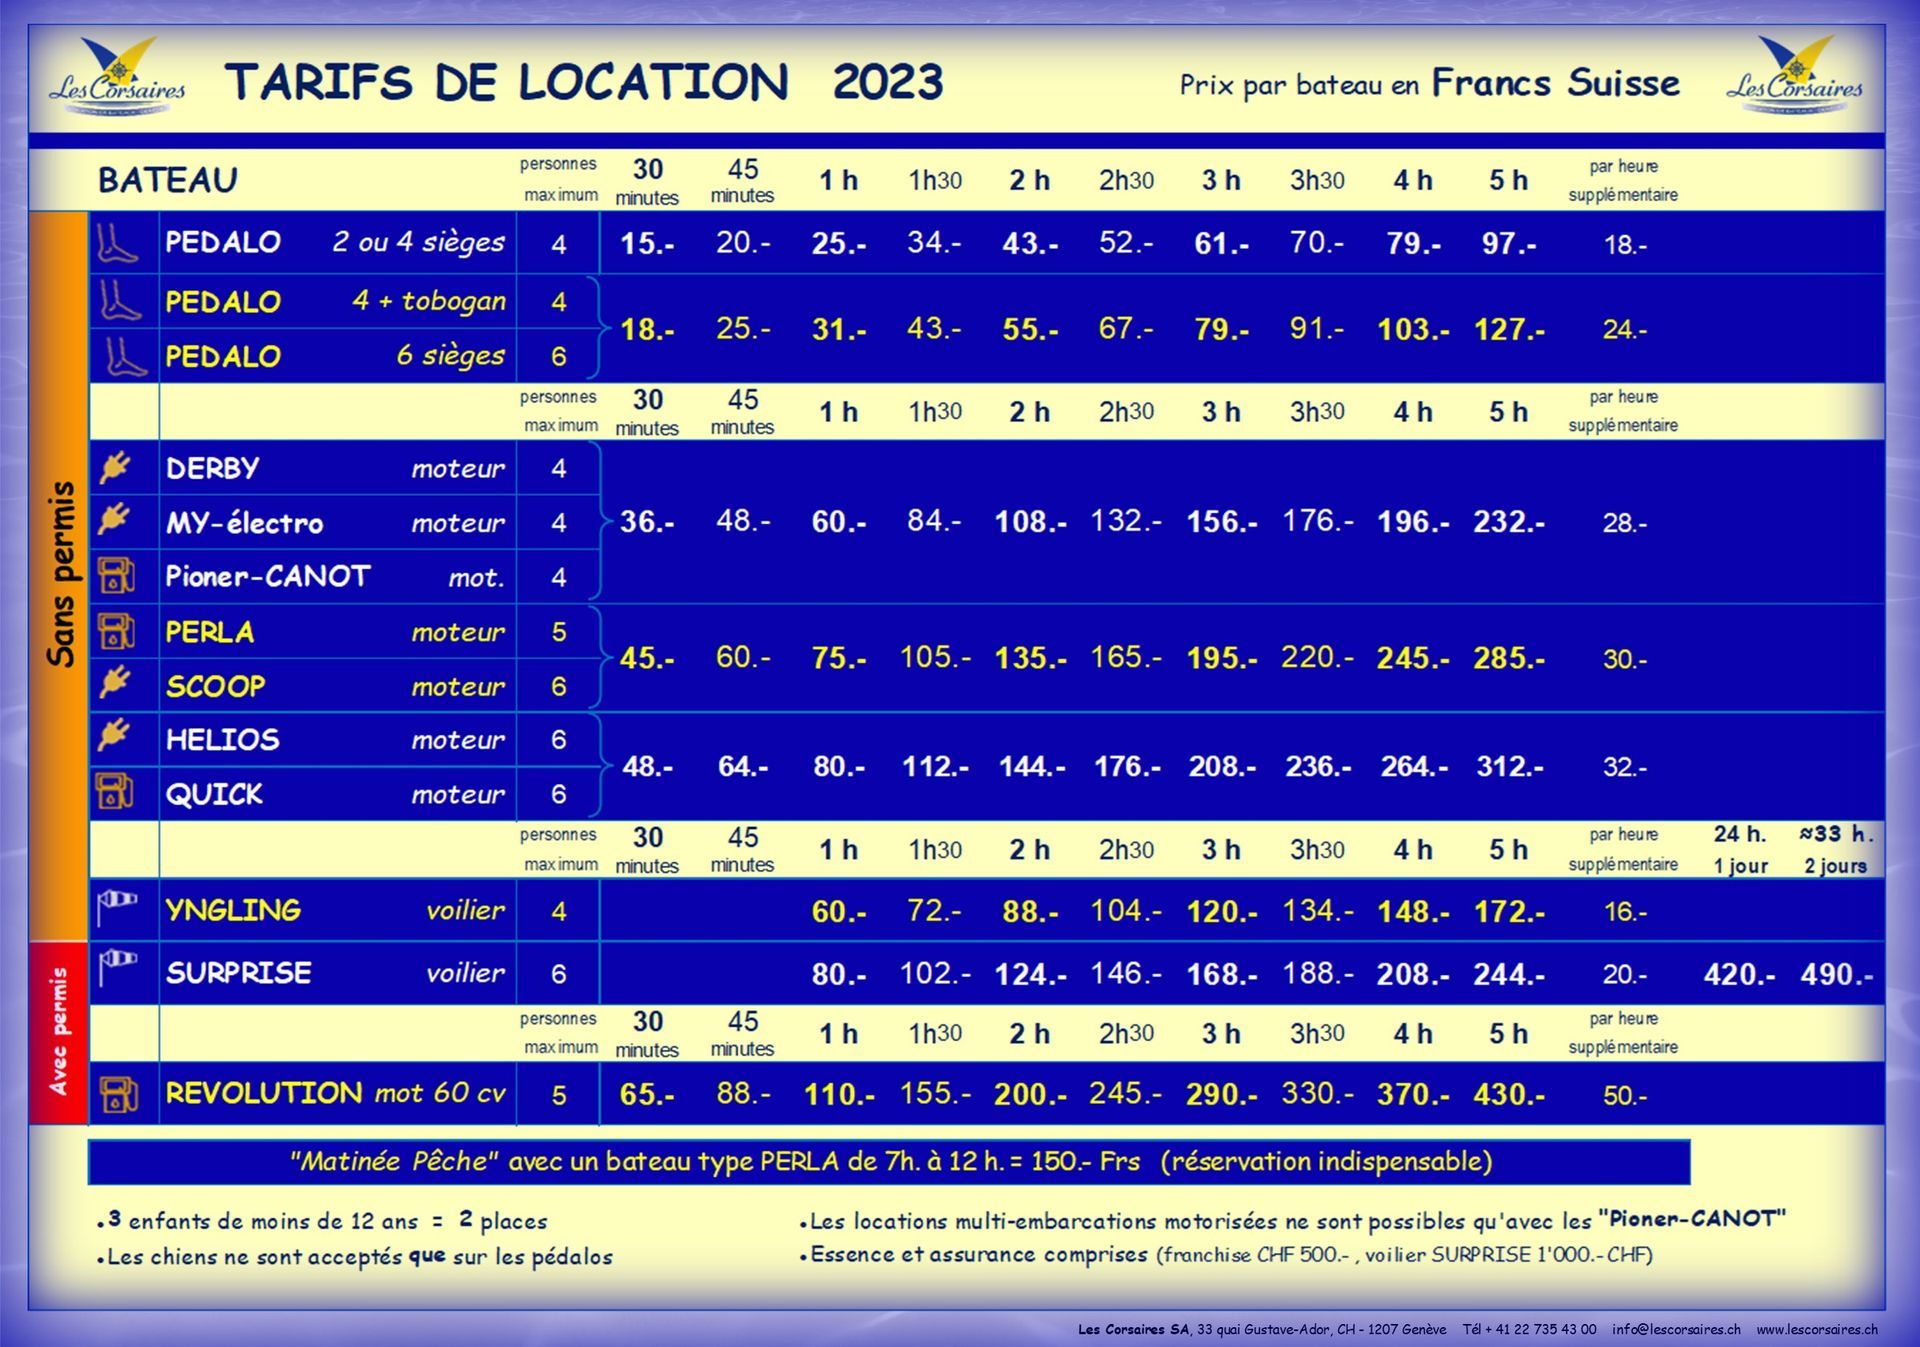 Les Corsaires Genève | Tarifs de location 2023